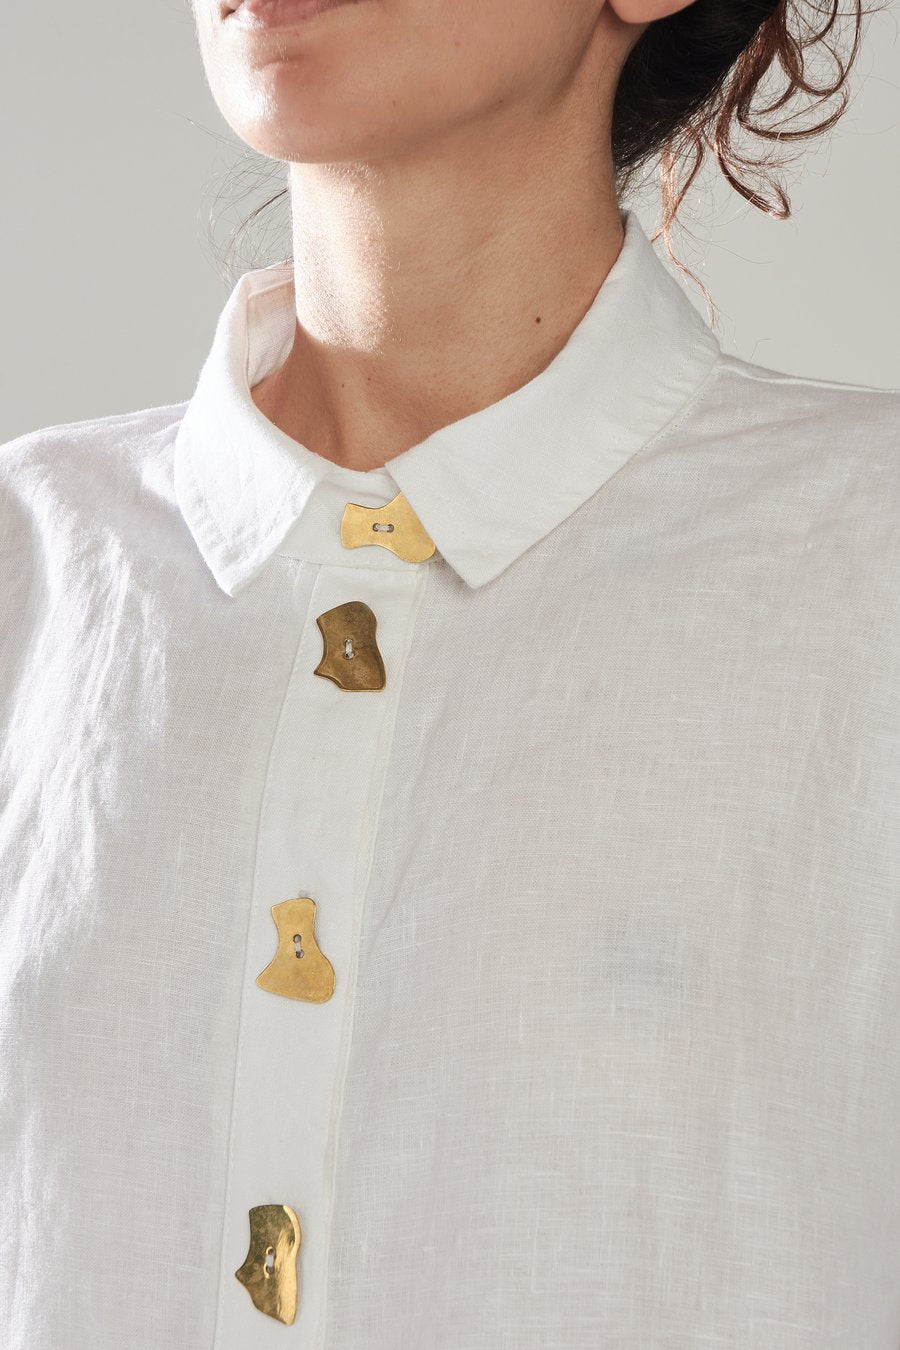 Brass Button Classic Shirt